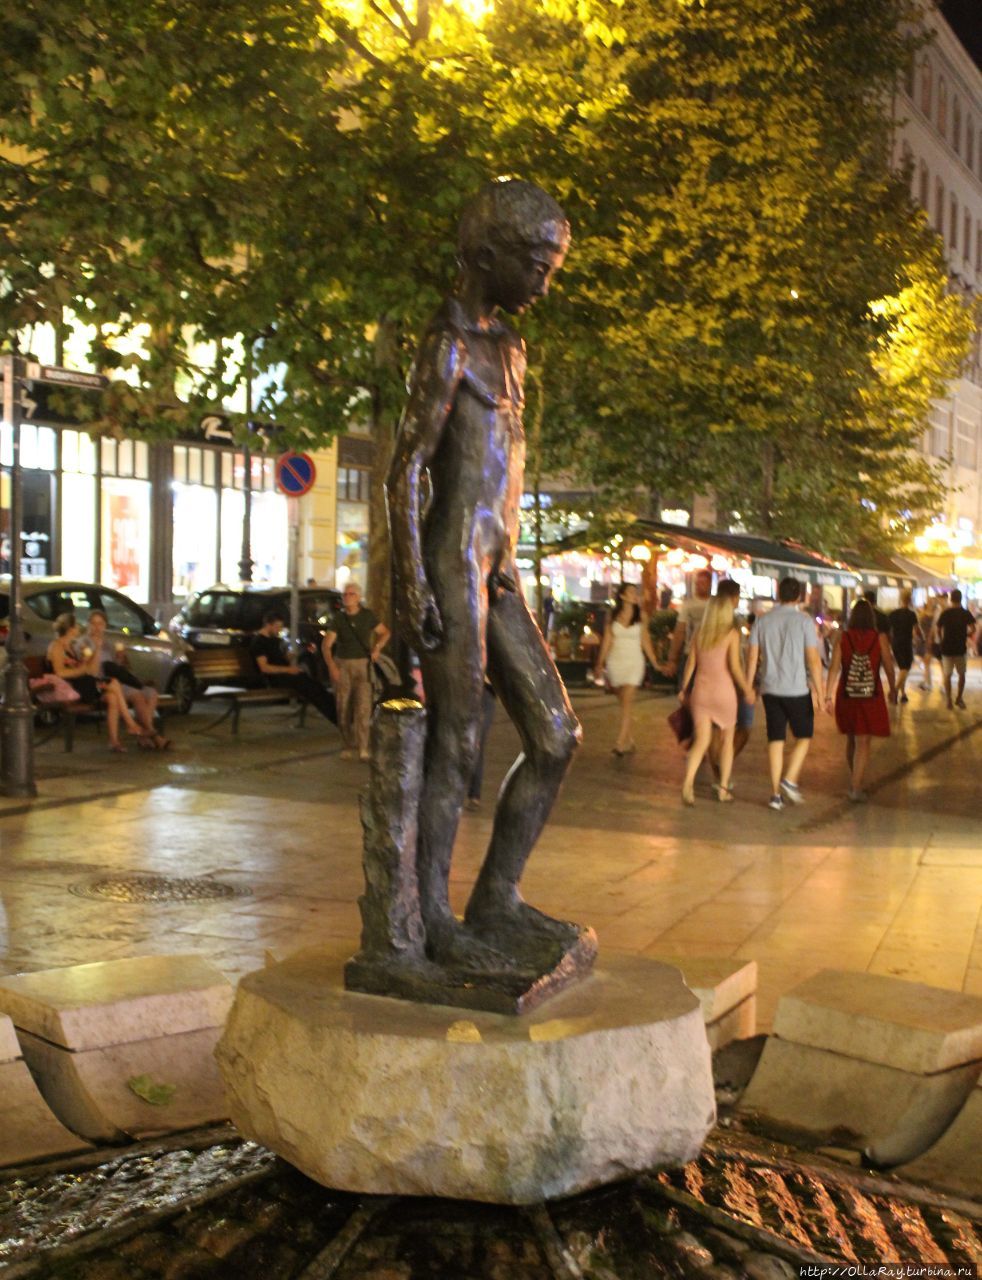 Фонтан со скульптурой обнажённого мальчика на улице Ваци. С созданием этой скульптуры нет никакой этакой истории, разве что со временем фонтан стал ориентиром для встреч горожан и гостей столицы. Будапешт, Венгрия